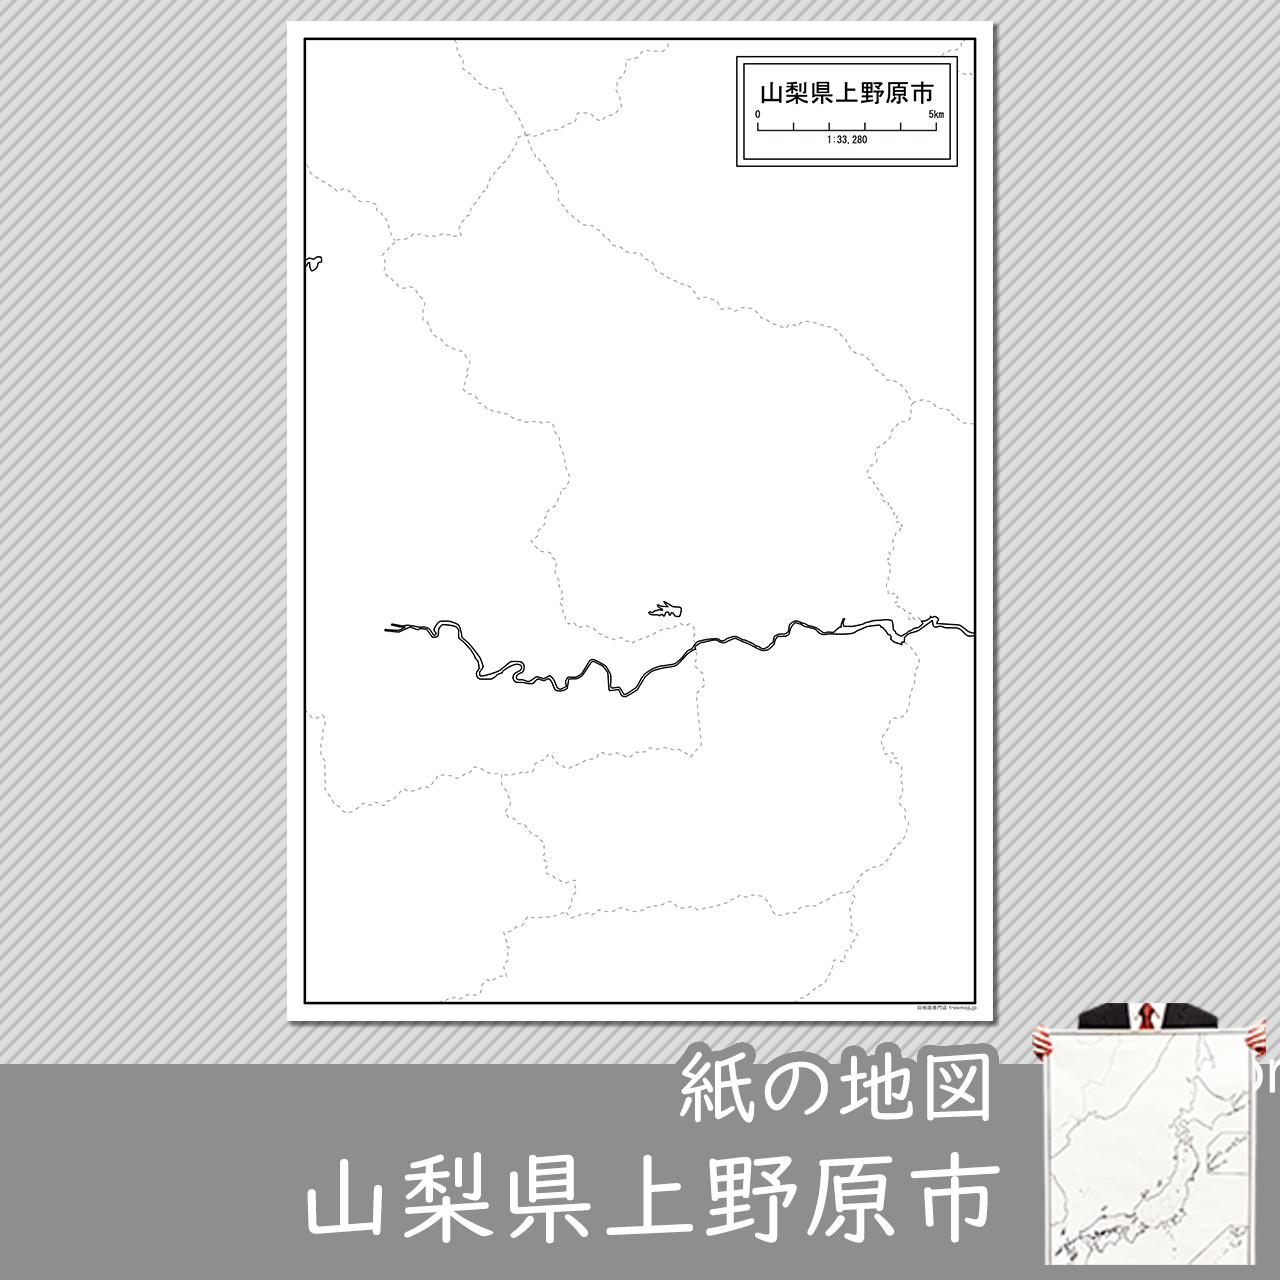 上野原市の紙の白地図のサムネイル